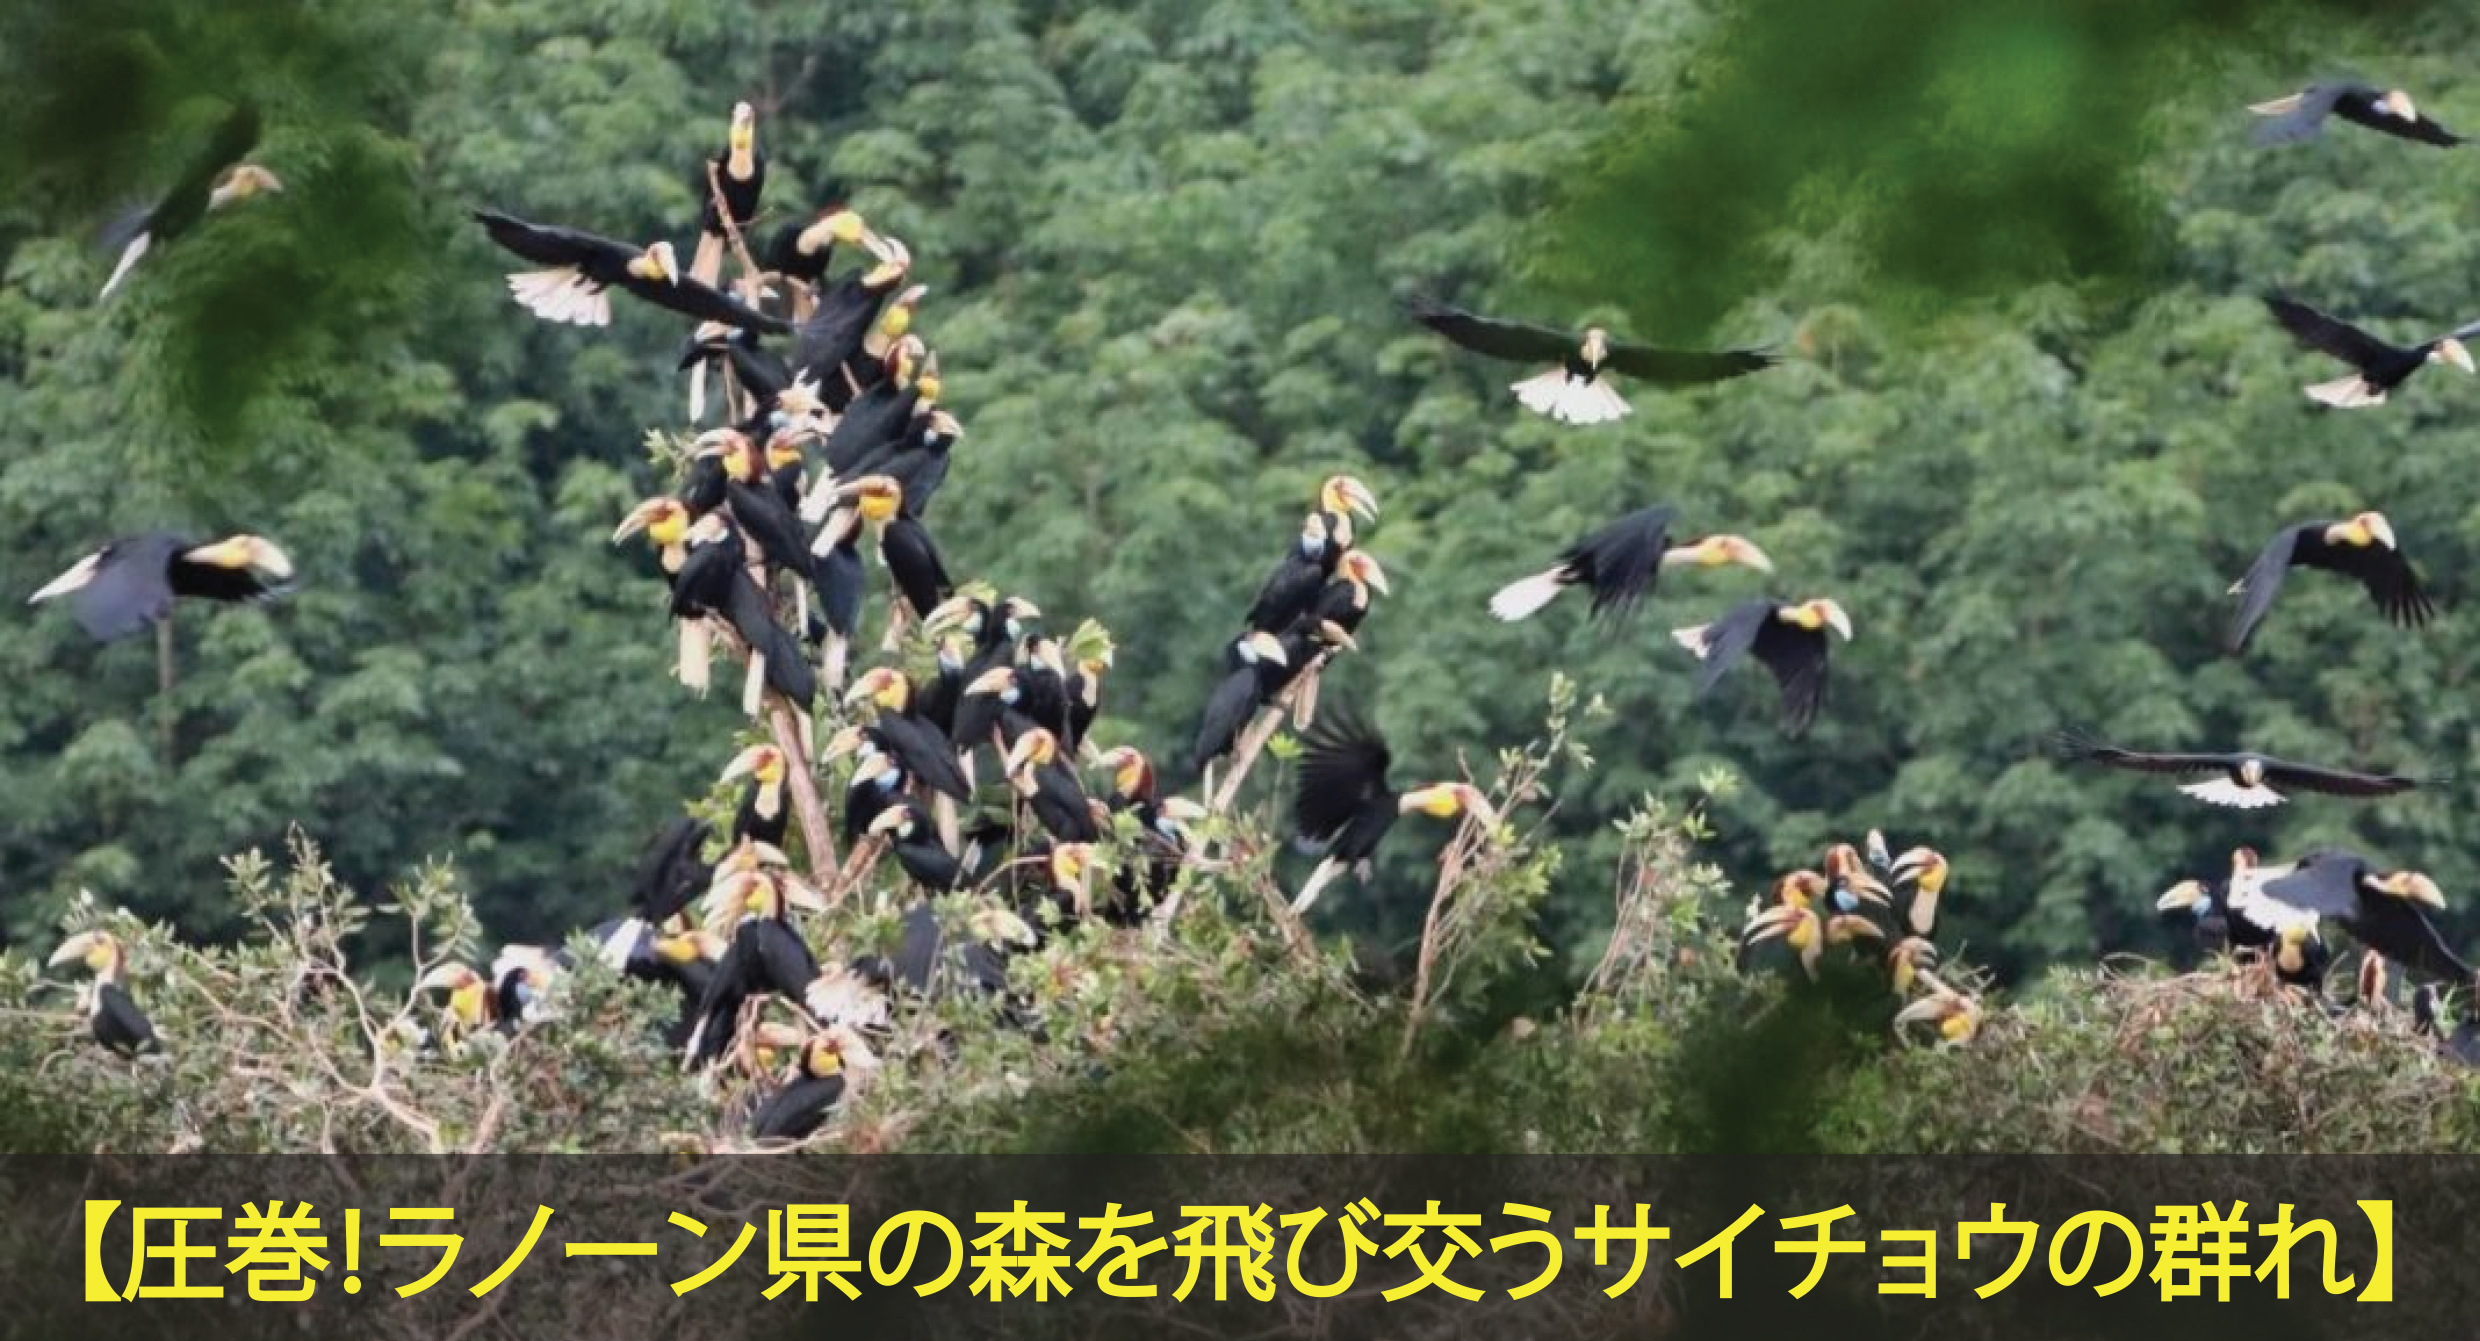 ラノーン県の森でサイチョウが飛び交い、大きな群れをなしている写真を公開しました。